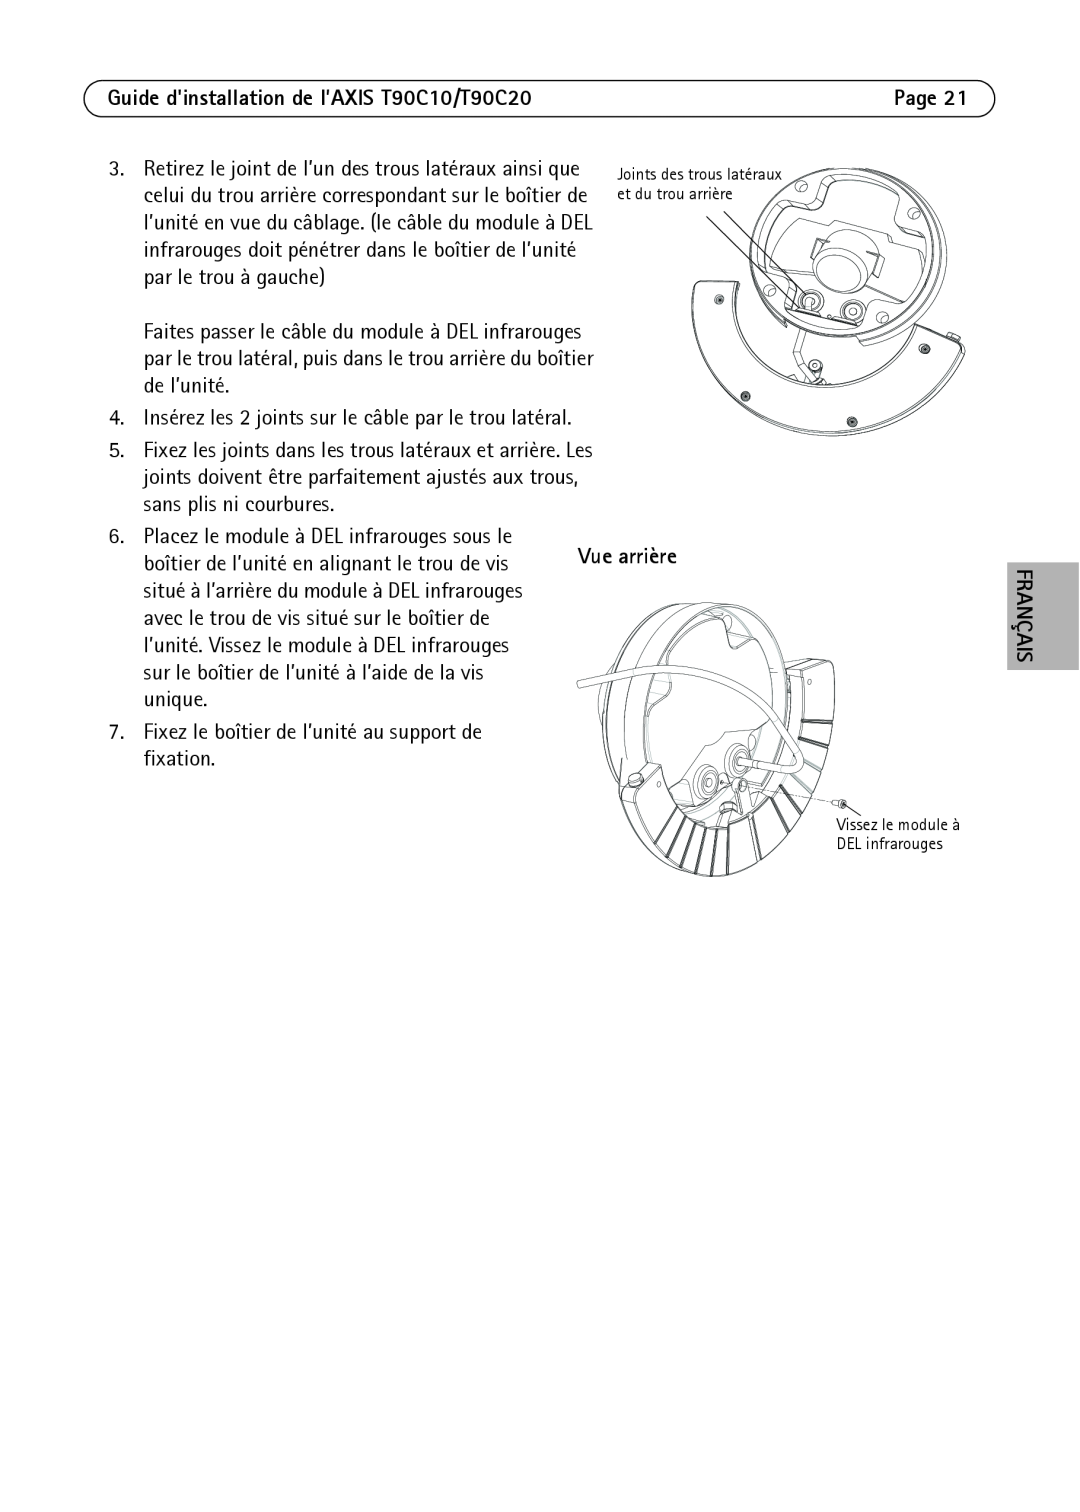 Axis Communications manual Guide dinstallation de l’AXIS T90C10/T90C20, boîtier de l’unité en alignant le trou de vis 